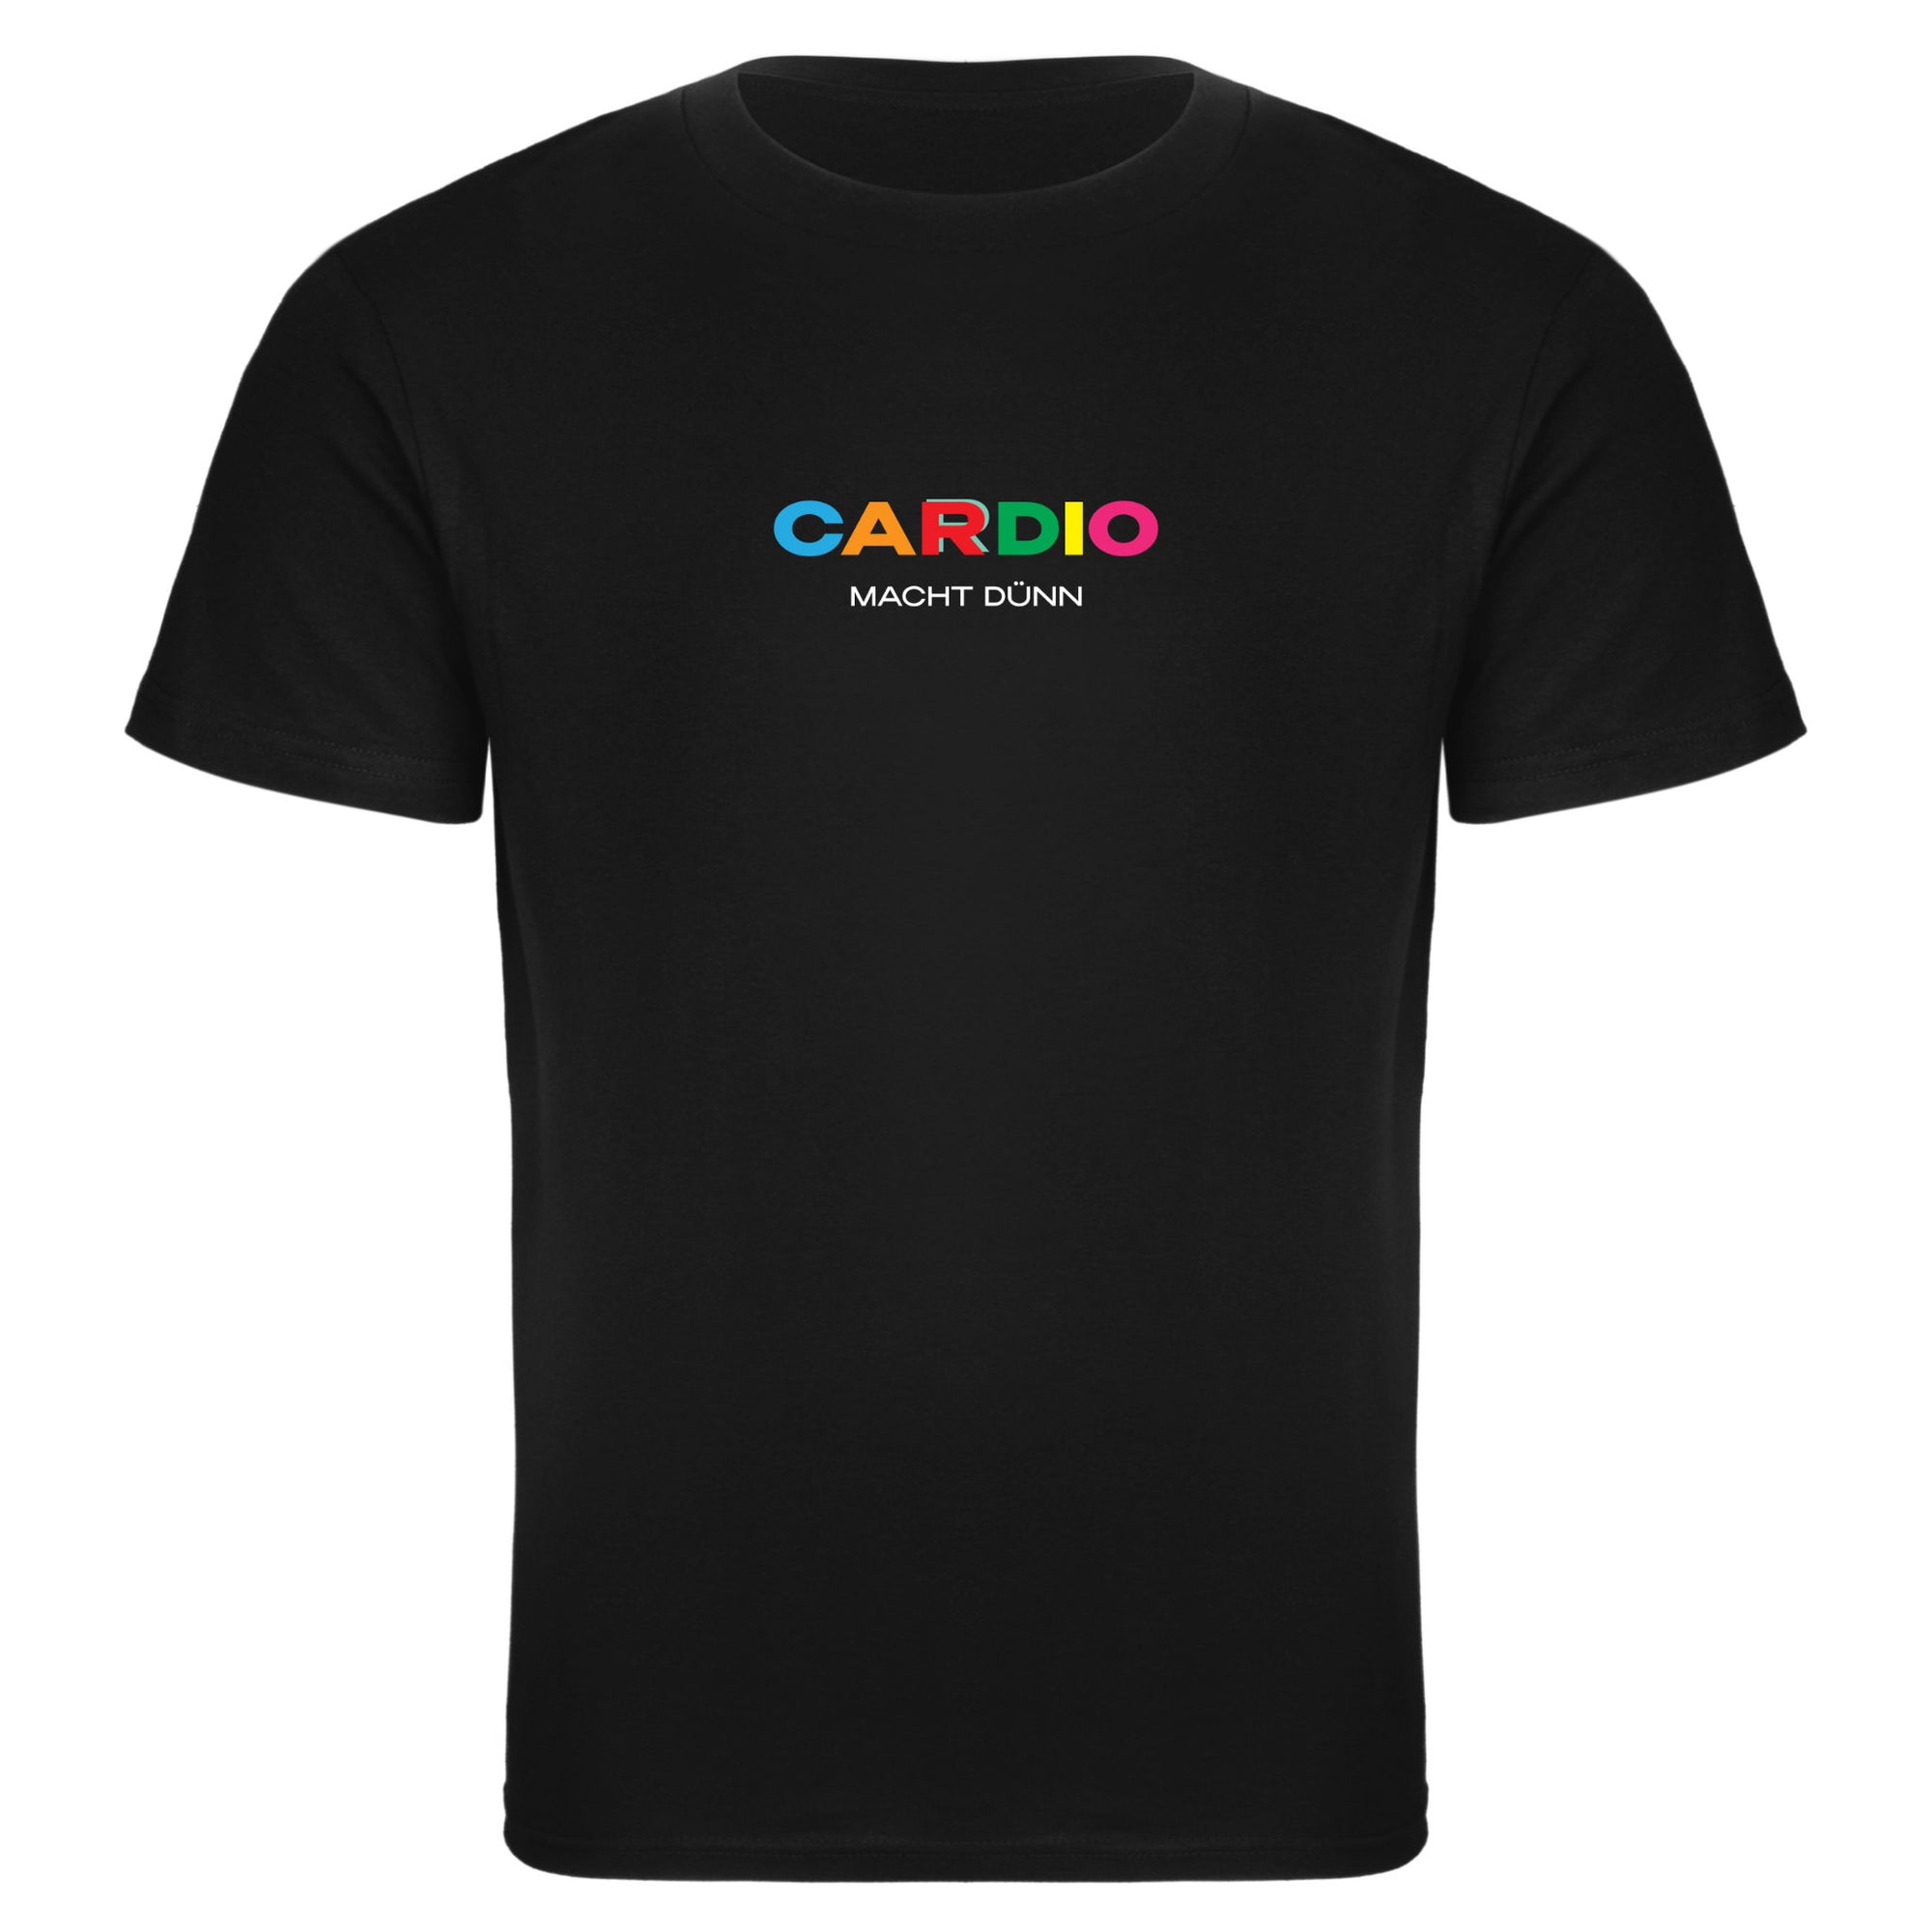 T-shirt standard fit | Cardio macht dünn